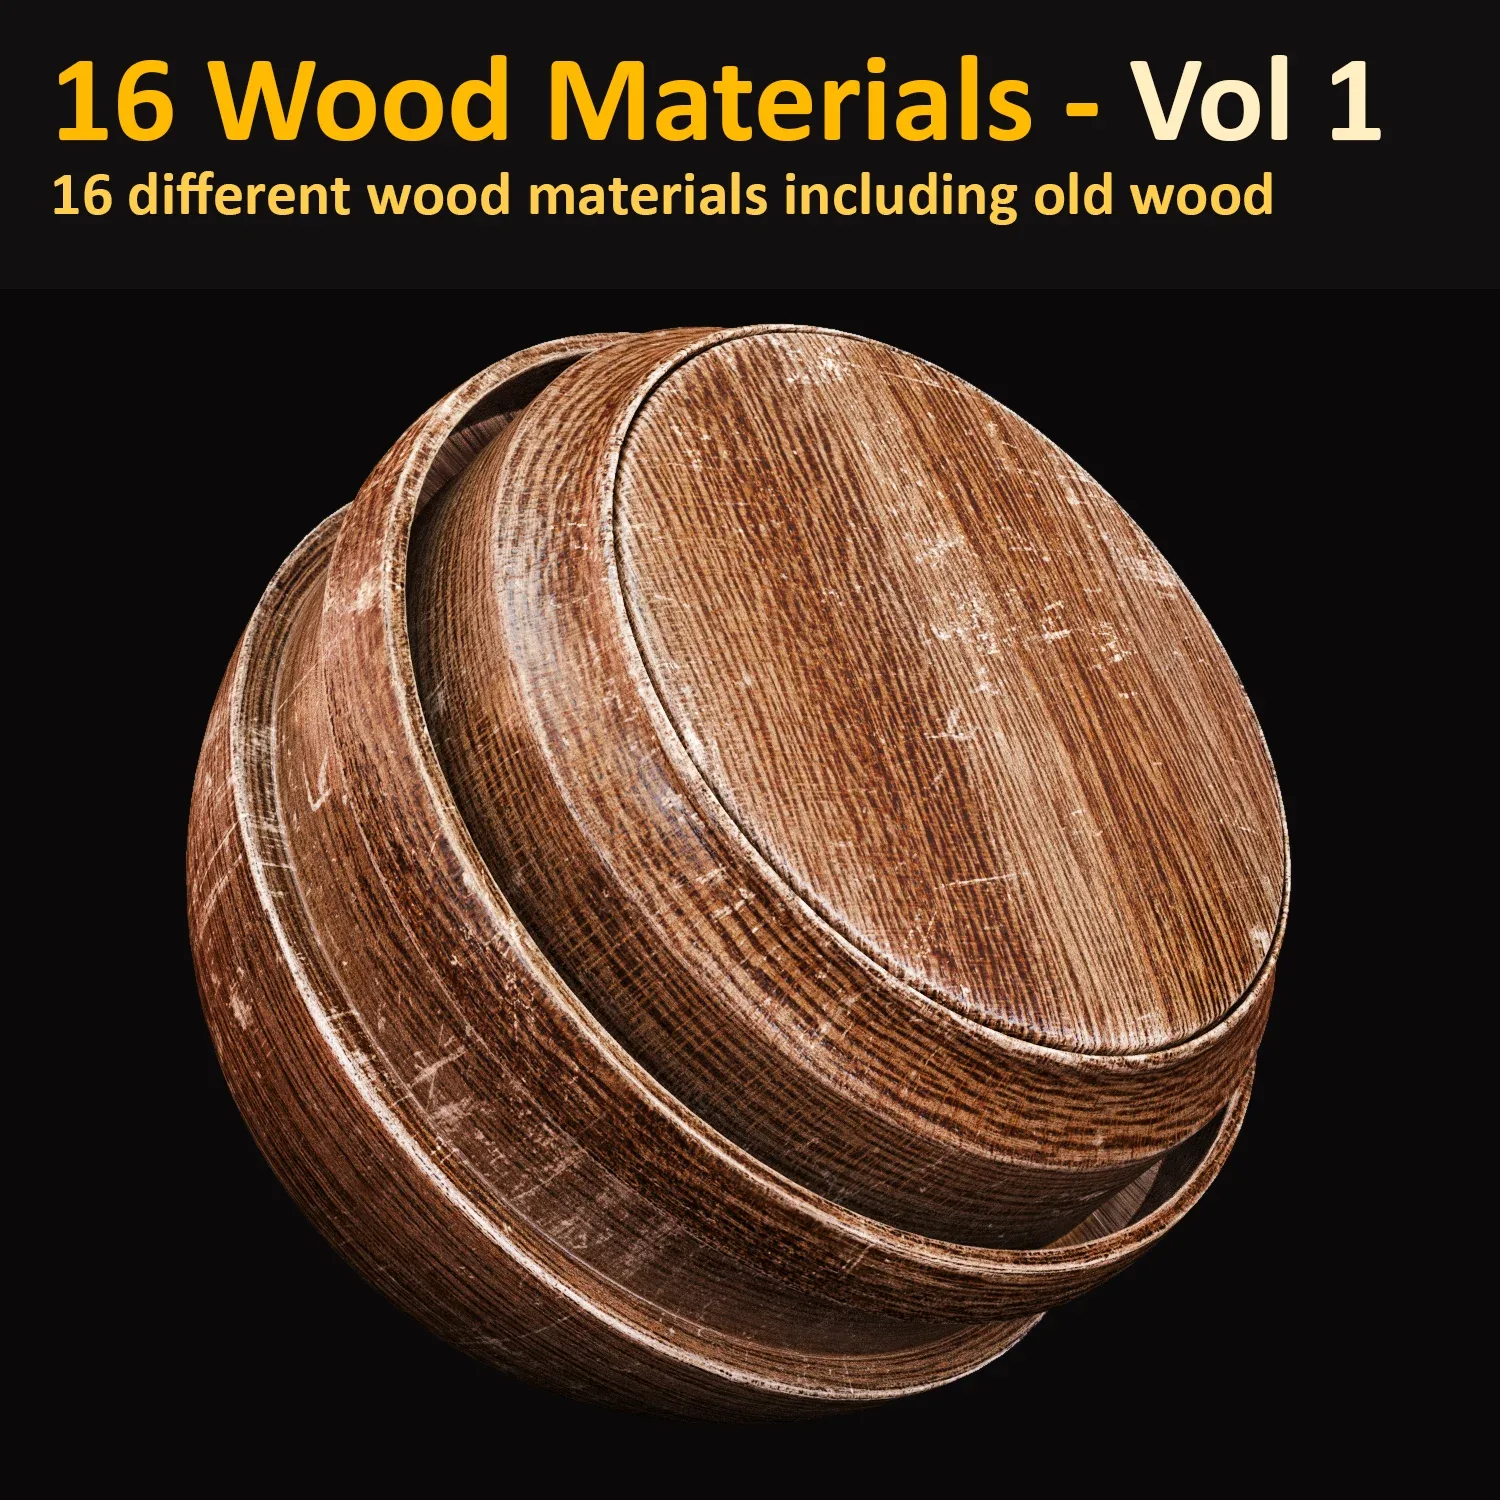 Wood Materials - Vol1